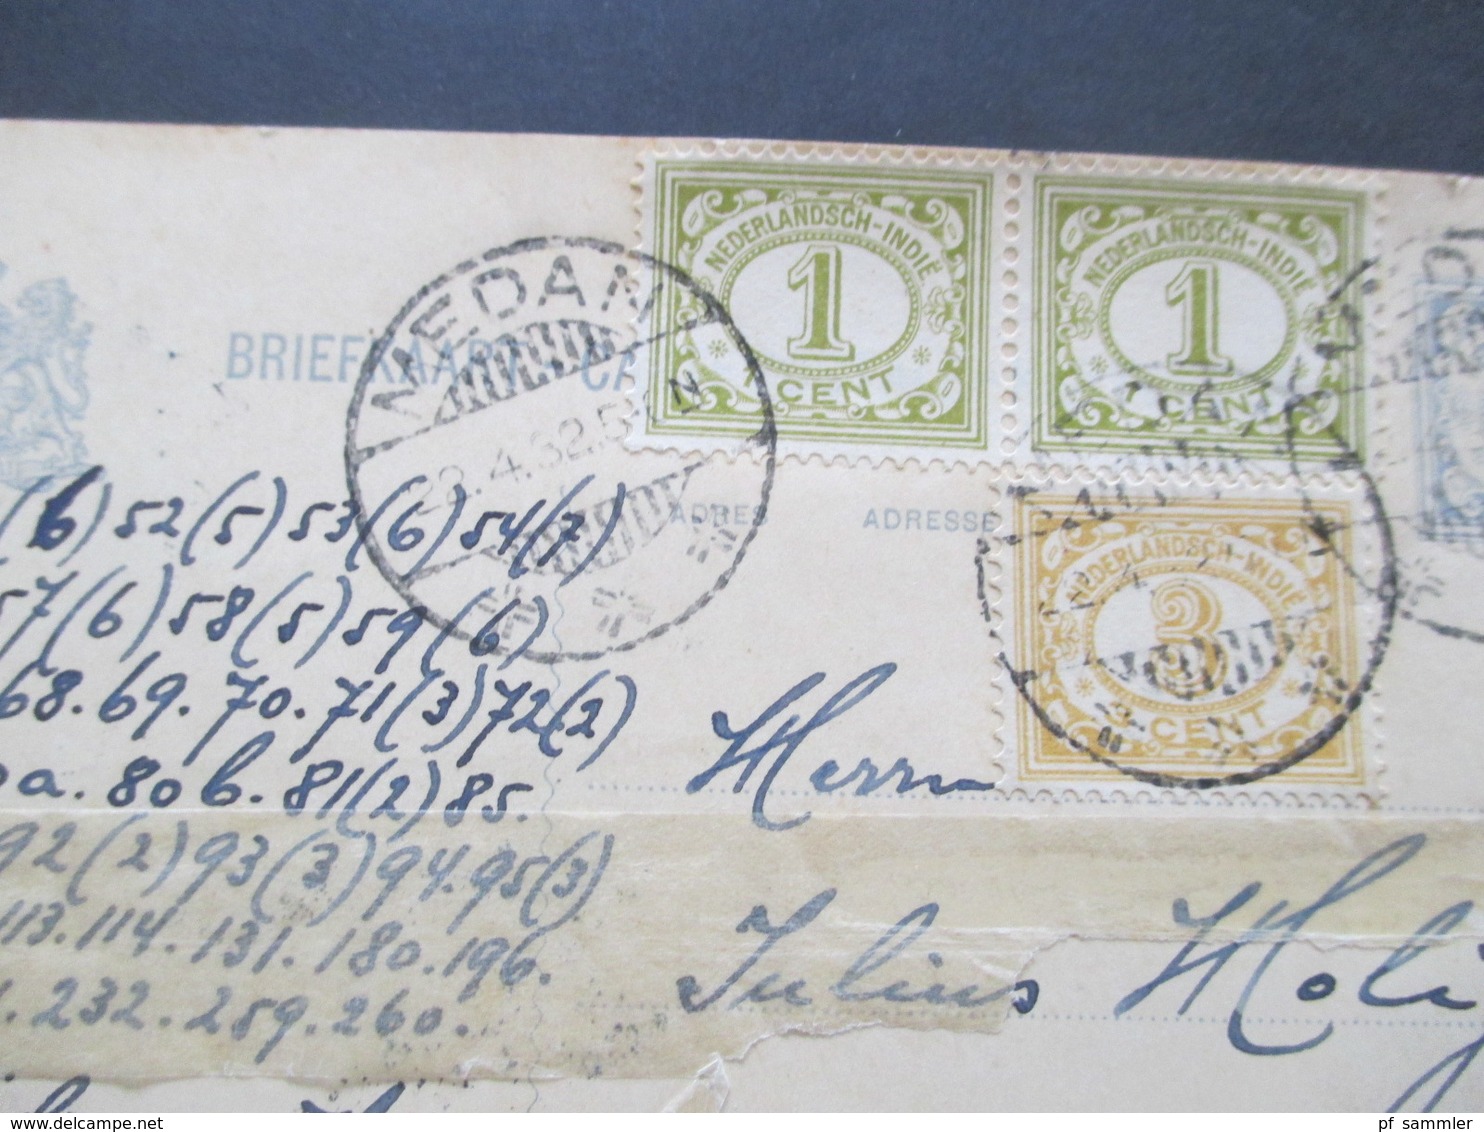 Niederländisch Indien 1932 Briefkaart Ganzsache Mit 3 Zusatzfrankaturen Nach Backa Palanka Jugoslawien Gesendet - Netherlands Indies